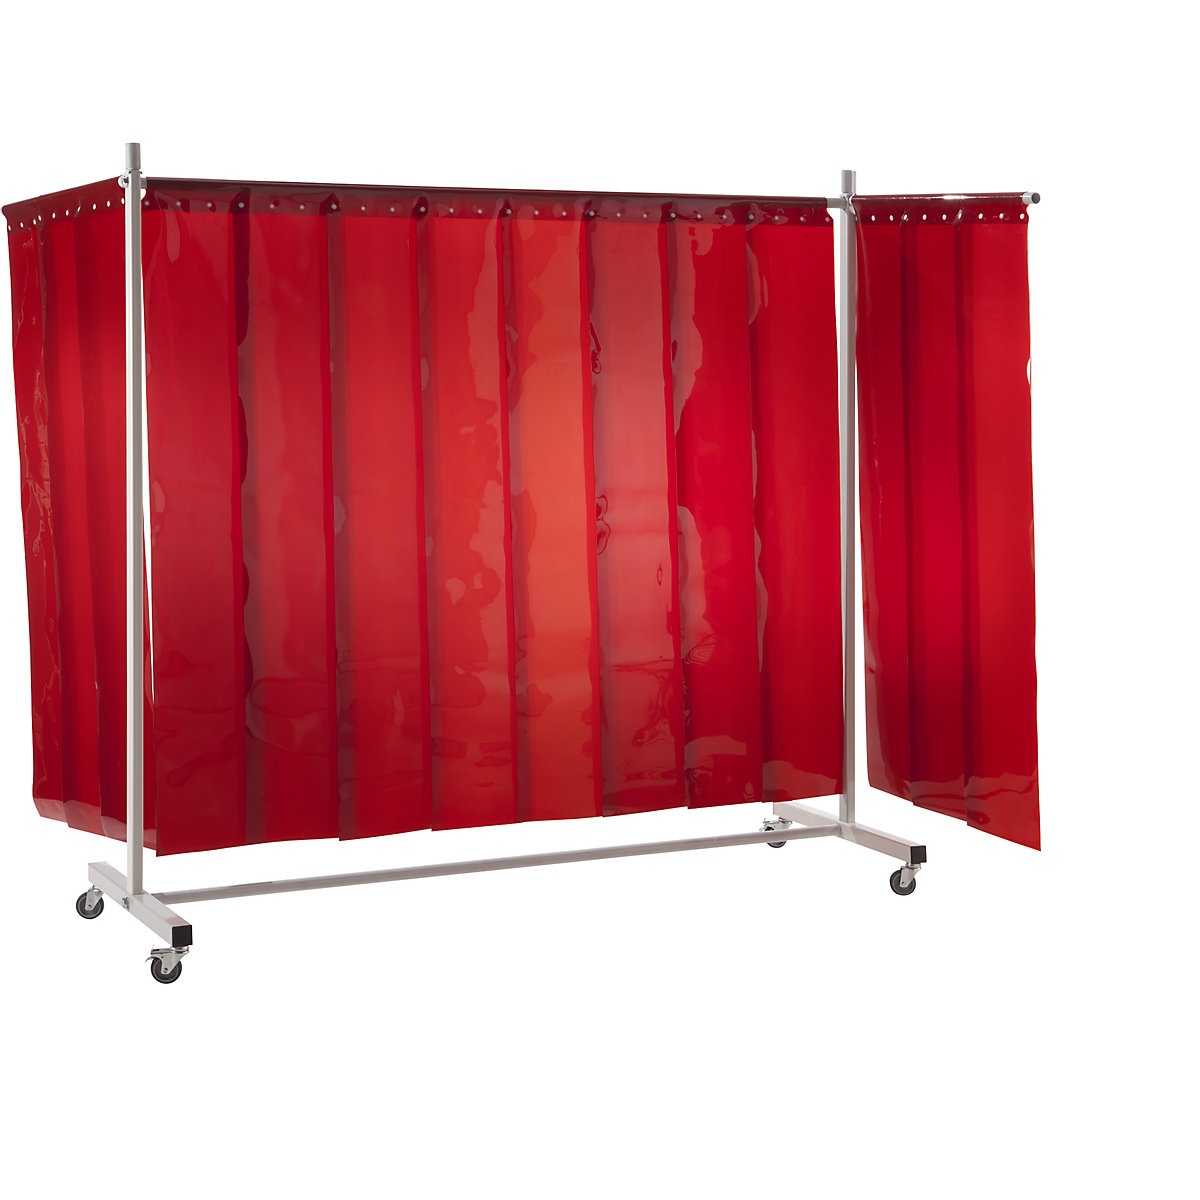 Ścianka ochronna dla spawacza, ruchoma, z zasłoną lamelową, czerwona, szer. x wys. 3700 x 2100 mm, 3-częściowa-5